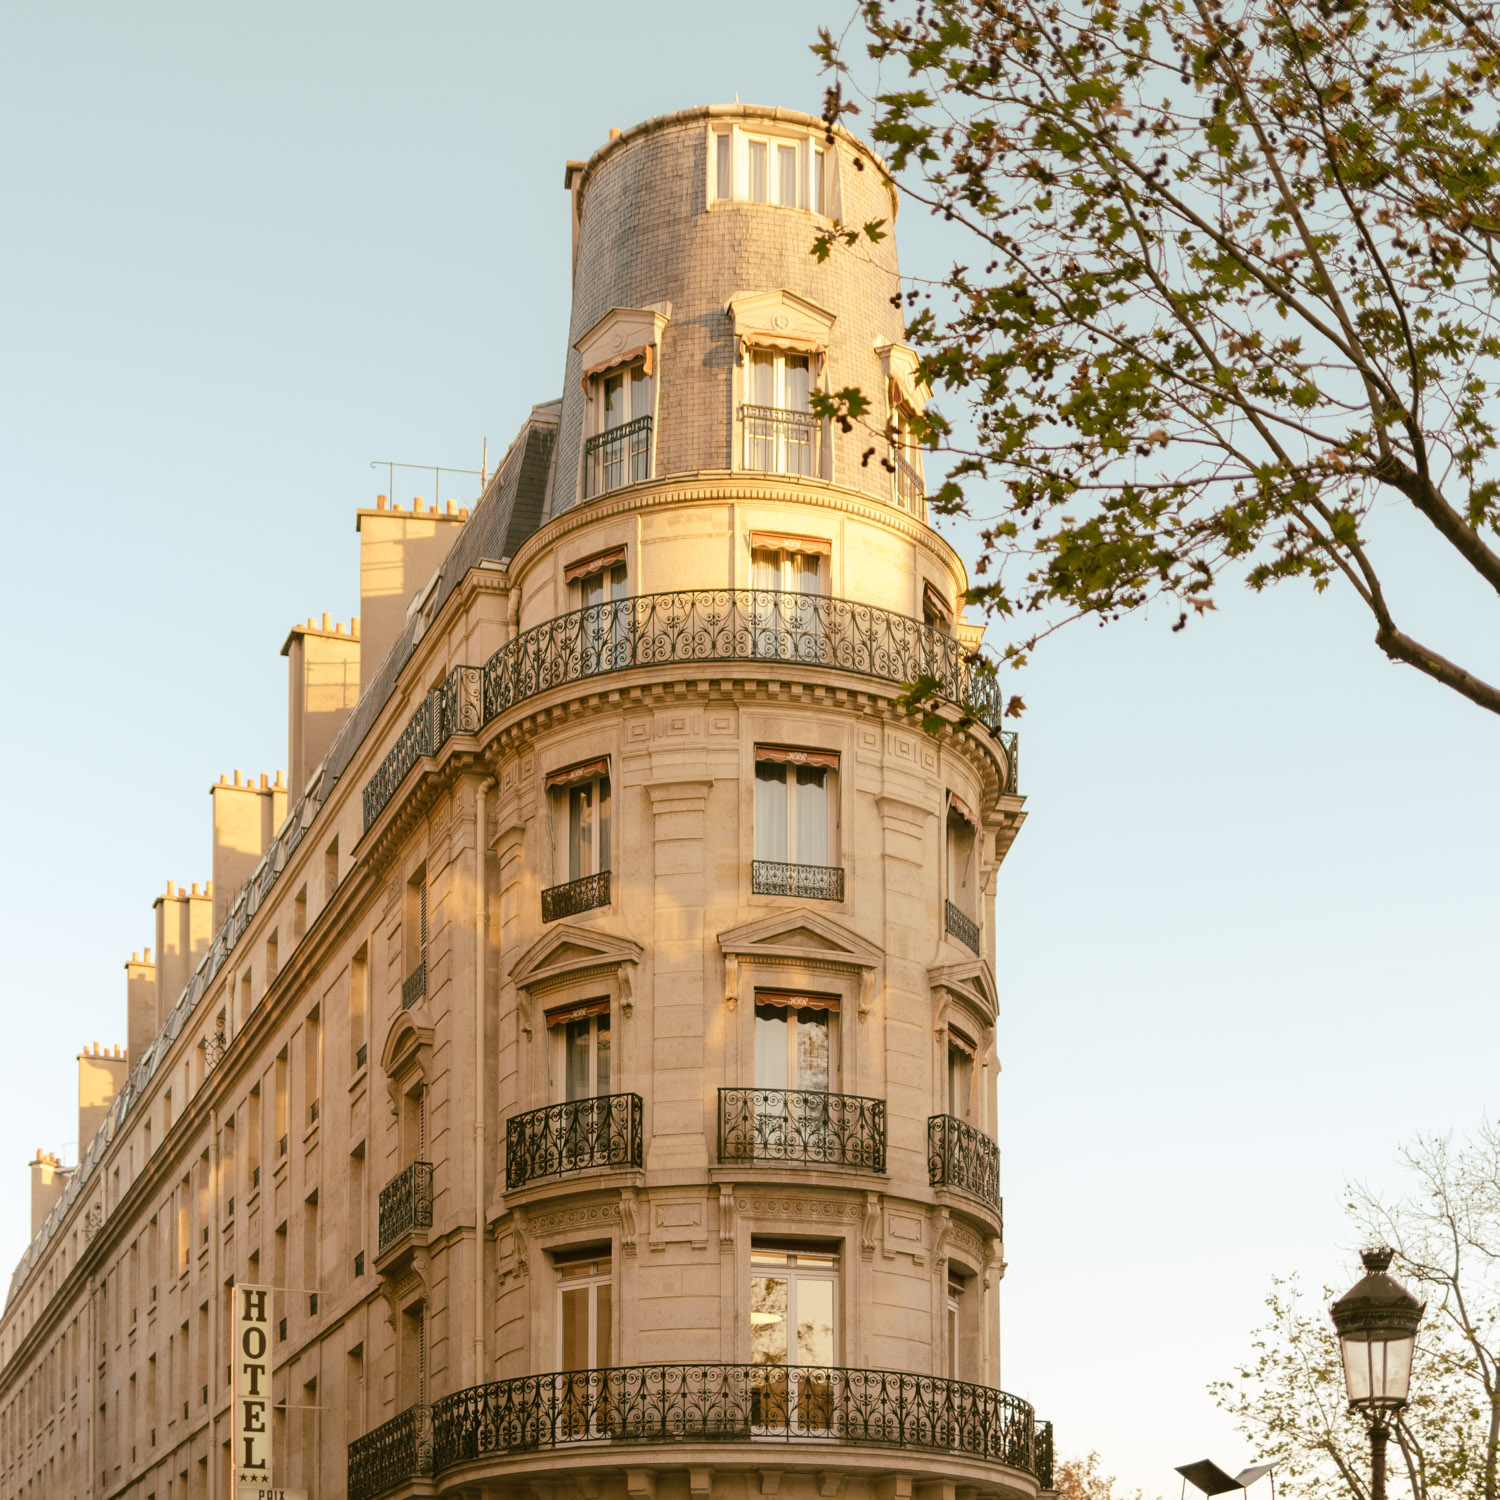 Immeuble du 10ème arrondissement - Toutes les photos sont sous Copyright © 2017 Jeff Frenette Photography / dezjeff. Pour utilisation des photos, me contacter au dezjeff@me.com